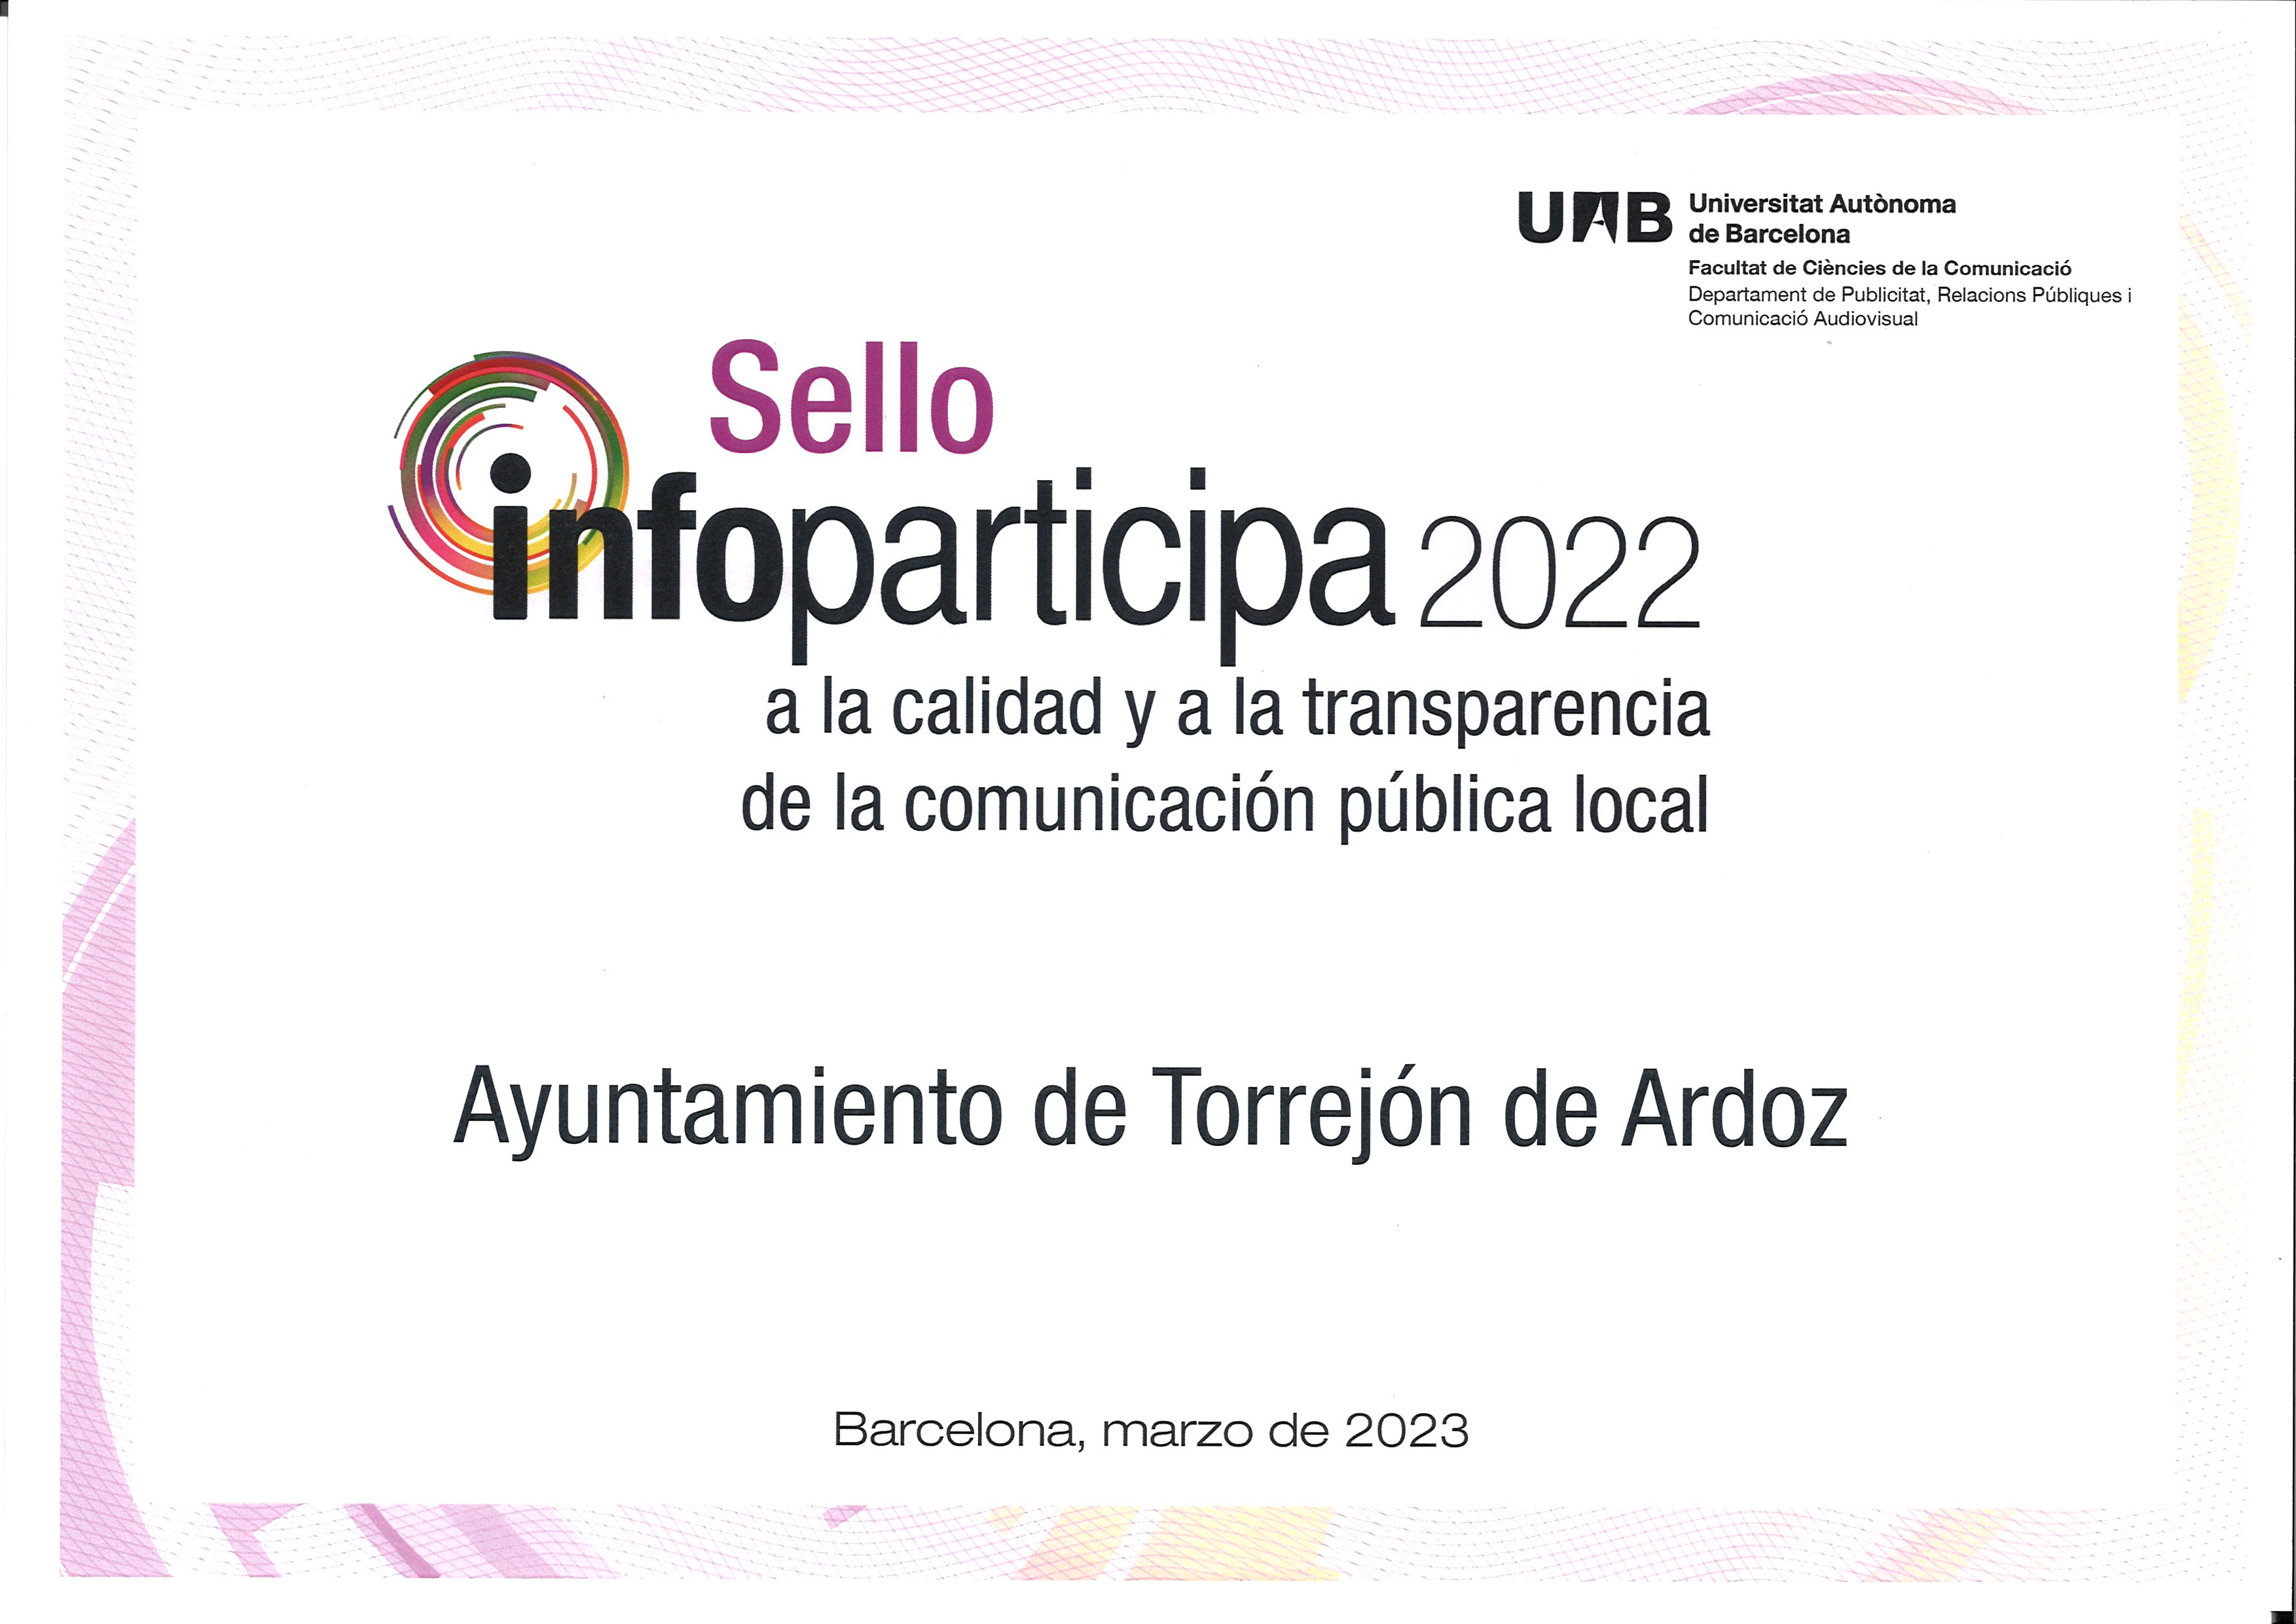 Torrejón de Ardoz vuelve a obtener, por segunda vez consecutiva, el sello Infoparticipa, reconocimiento que le sigue situando como uno de los ayuntamientos más transparentes de España